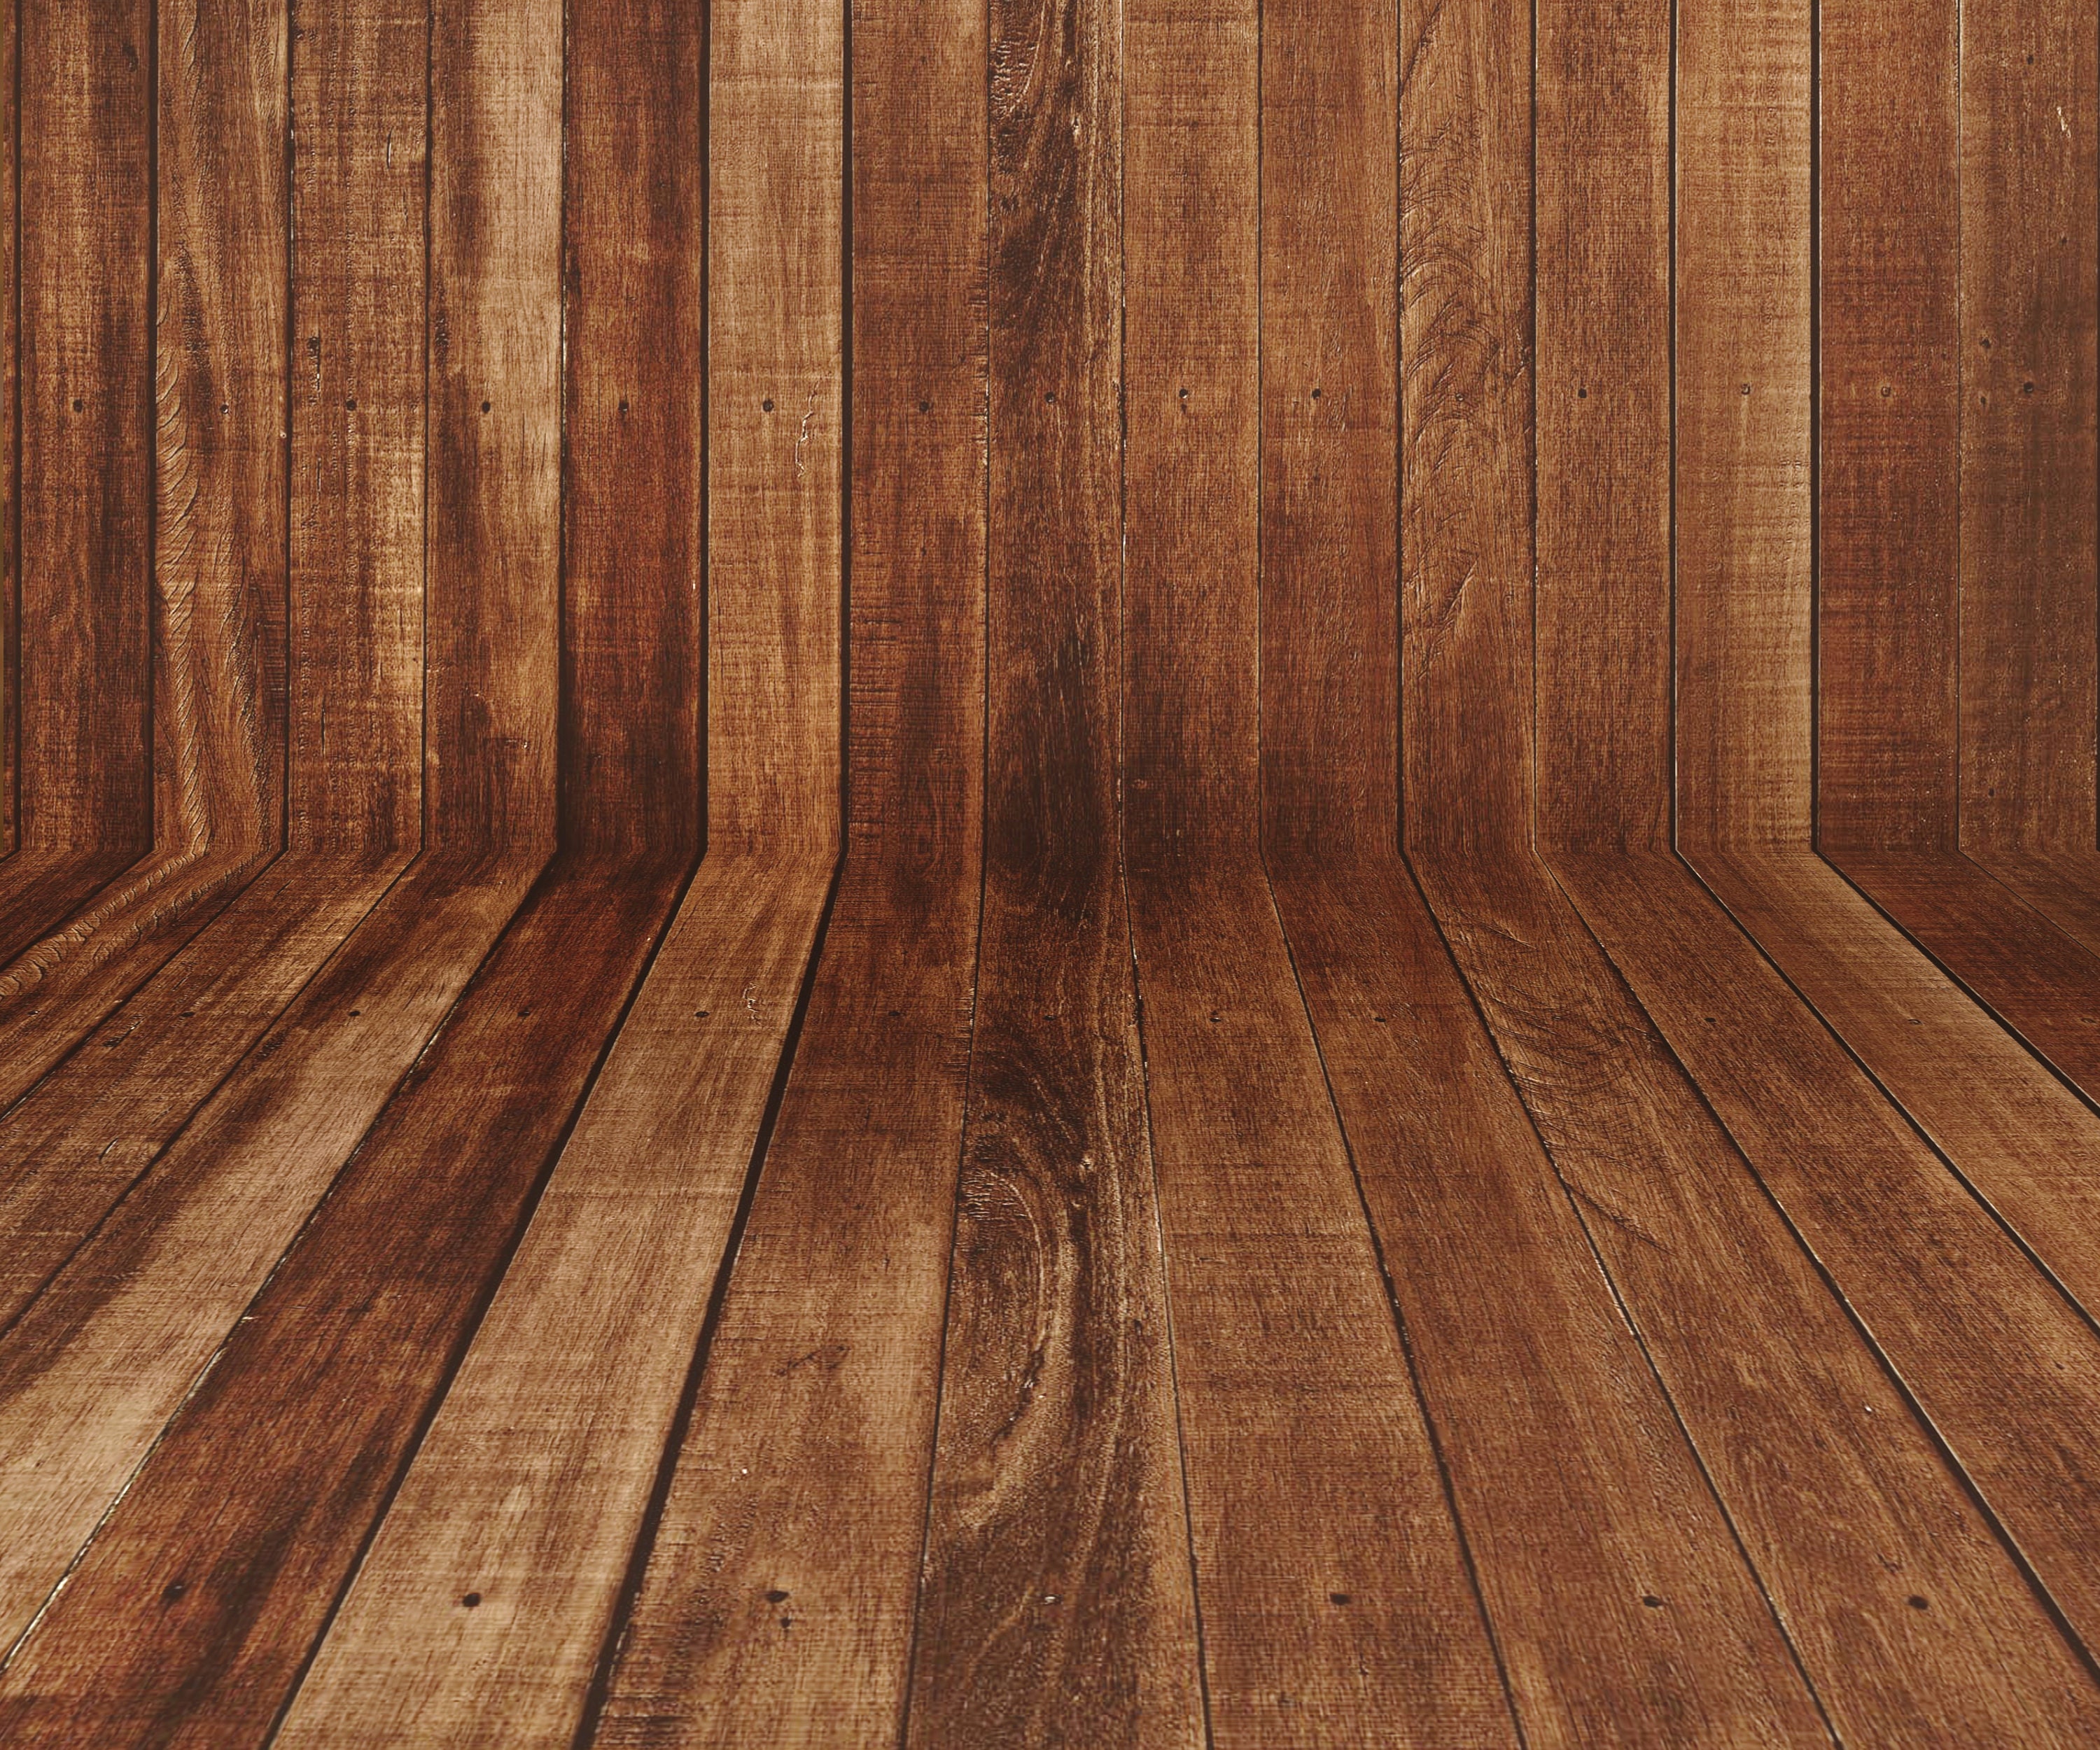 Nền gỗ đơn giản: Với nền gỗ đơn giản, bạn sẽ thấy sự tinh tế và ấm cúng cho bất kỳ thiết kế nào. Màu sắc tự nhiên và phong cách đơn giản của nó sẽ giúp tạo ra một không gian yên bình và dễ chịu. Hãy xem hình ảnh để khám phá thêm về nền gỗ đơn giản nhé!